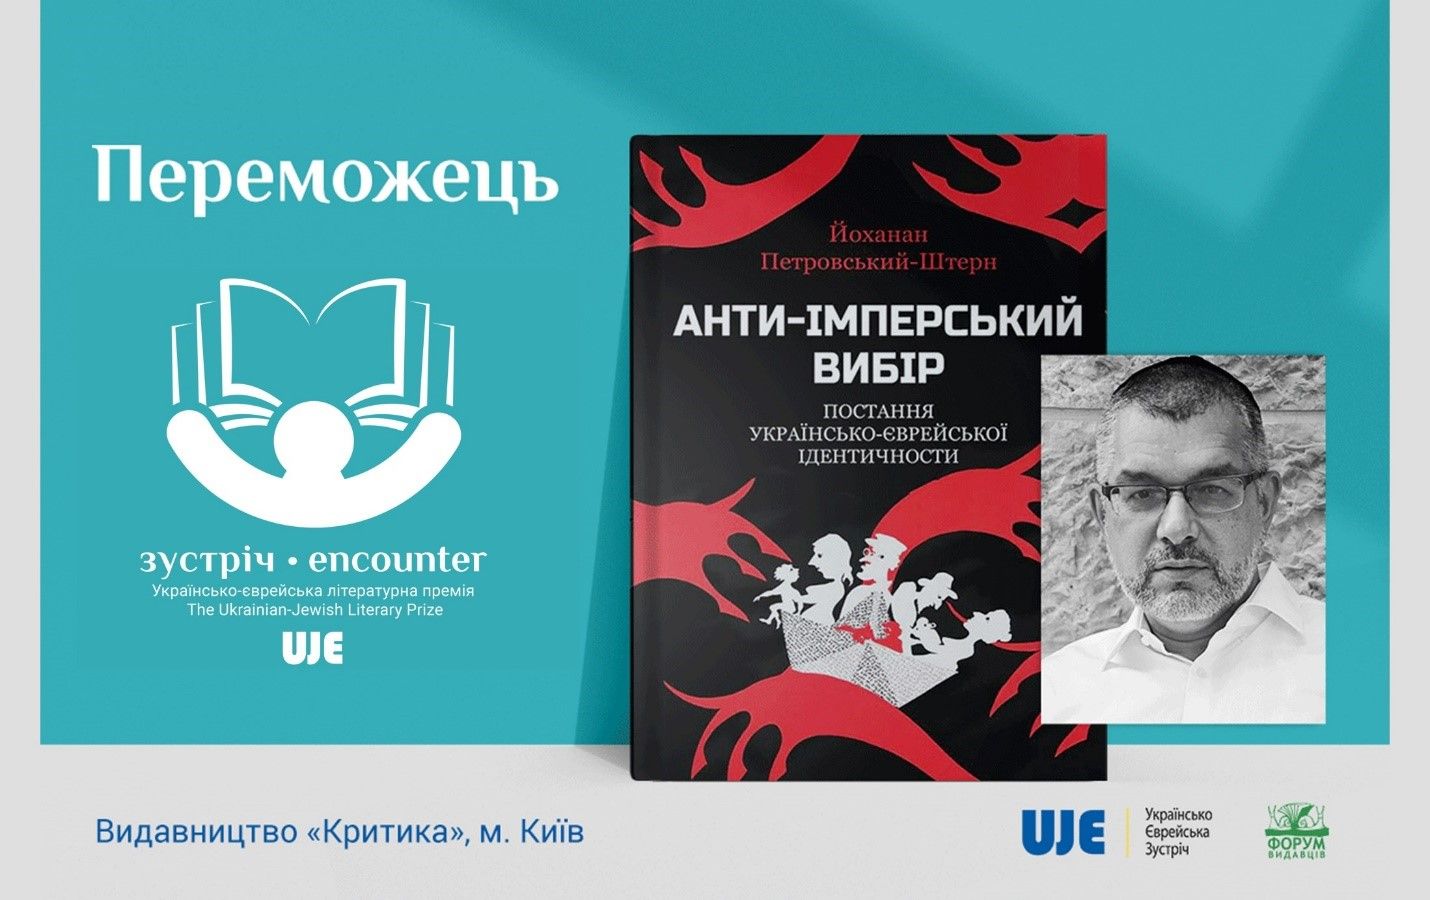 Оголошено переможця другої Українсько-єврейської літературної премії «Зустріч»